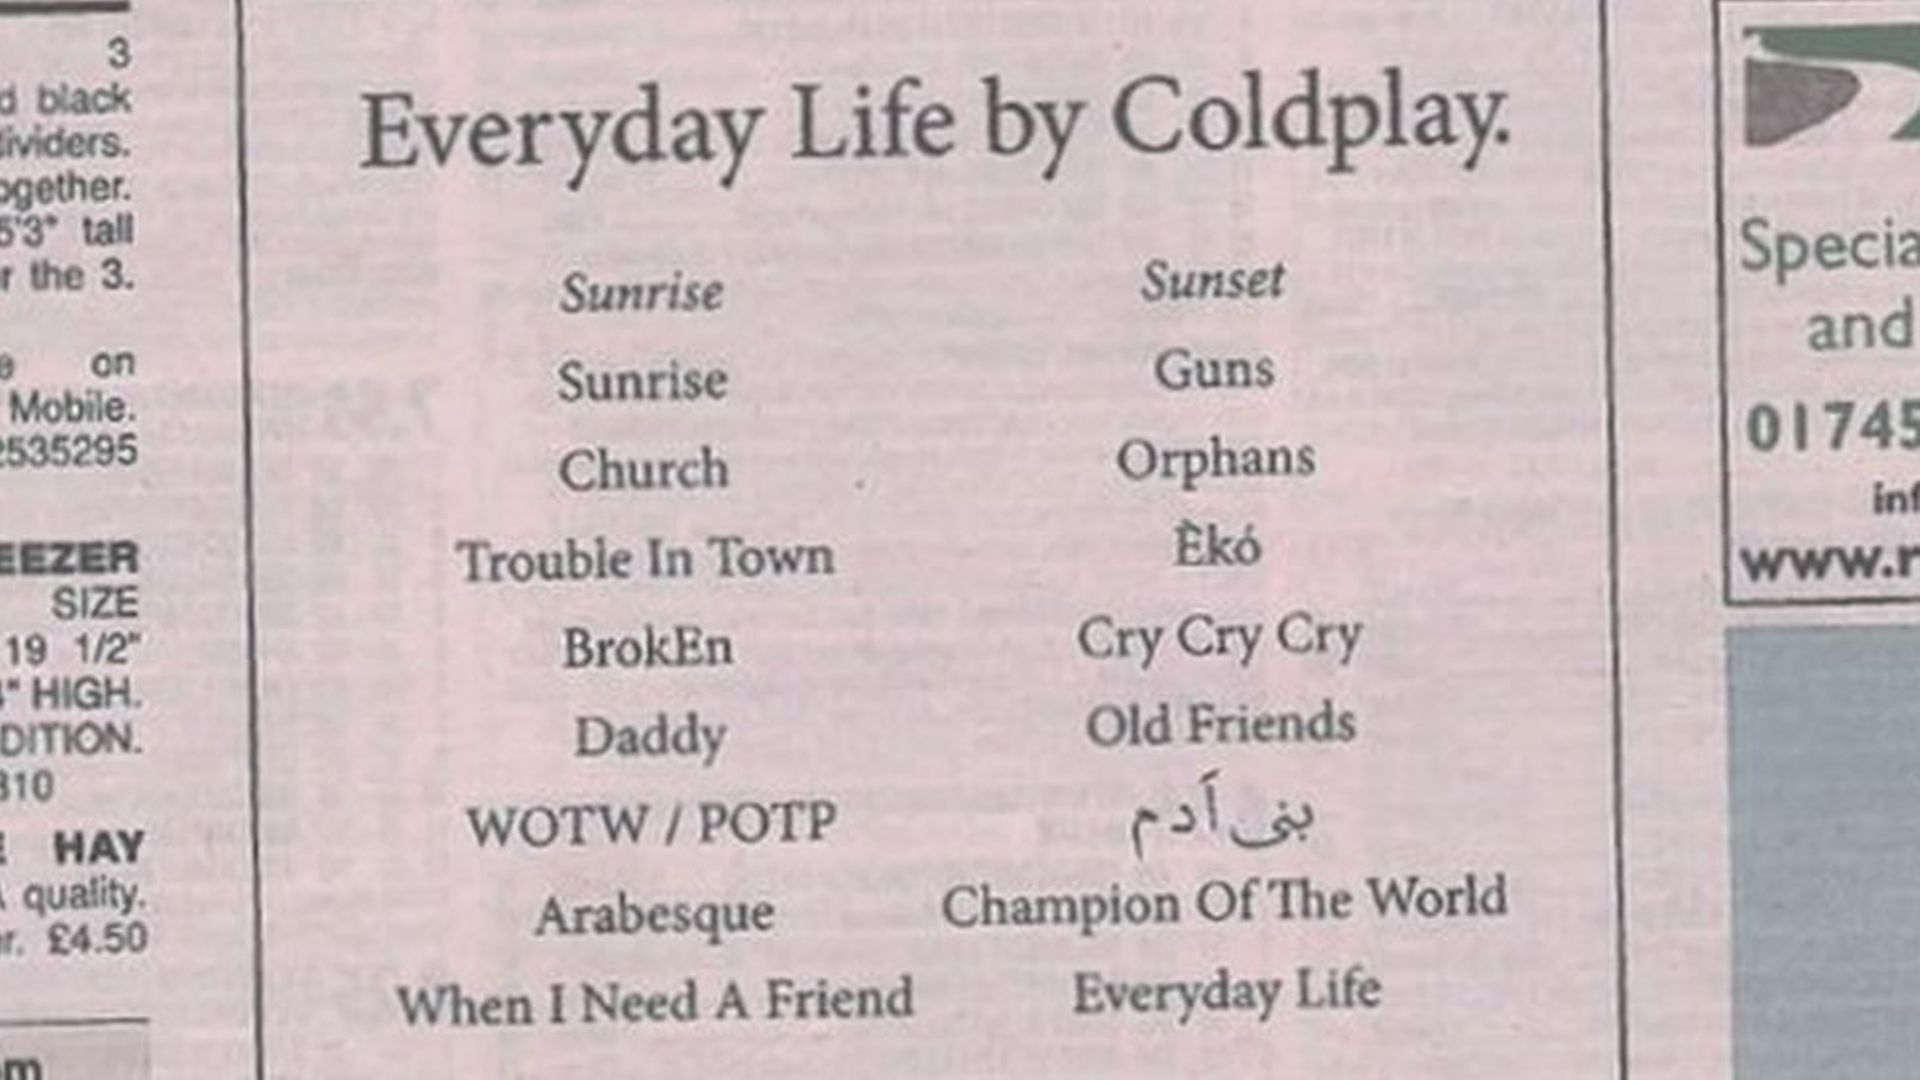 Coldplay publie dans les "petites annonces" d'un journal local